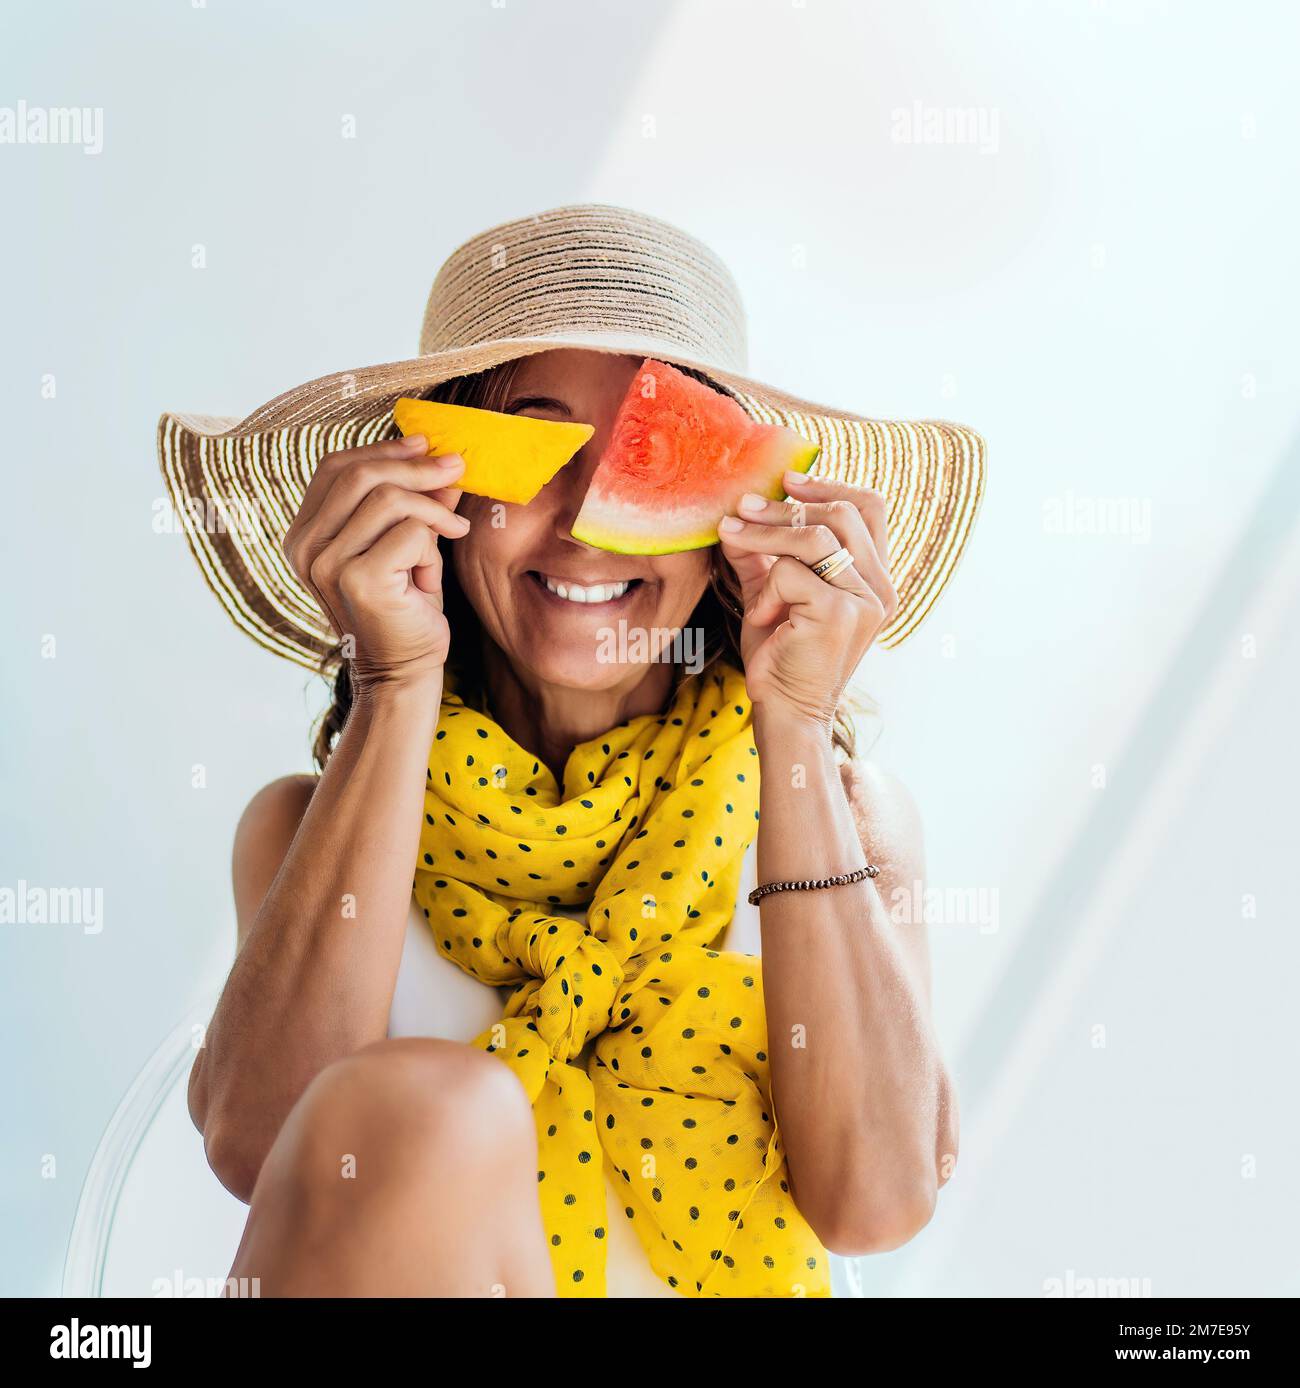 Eine Frau mittleren Alters mit Strohhut und gelbem Schal macht Witze und amüsiert sich, indem sie ihr Gesicht mit einem Stück Ananas und einer Wassermelone bedeckt Stockfoto